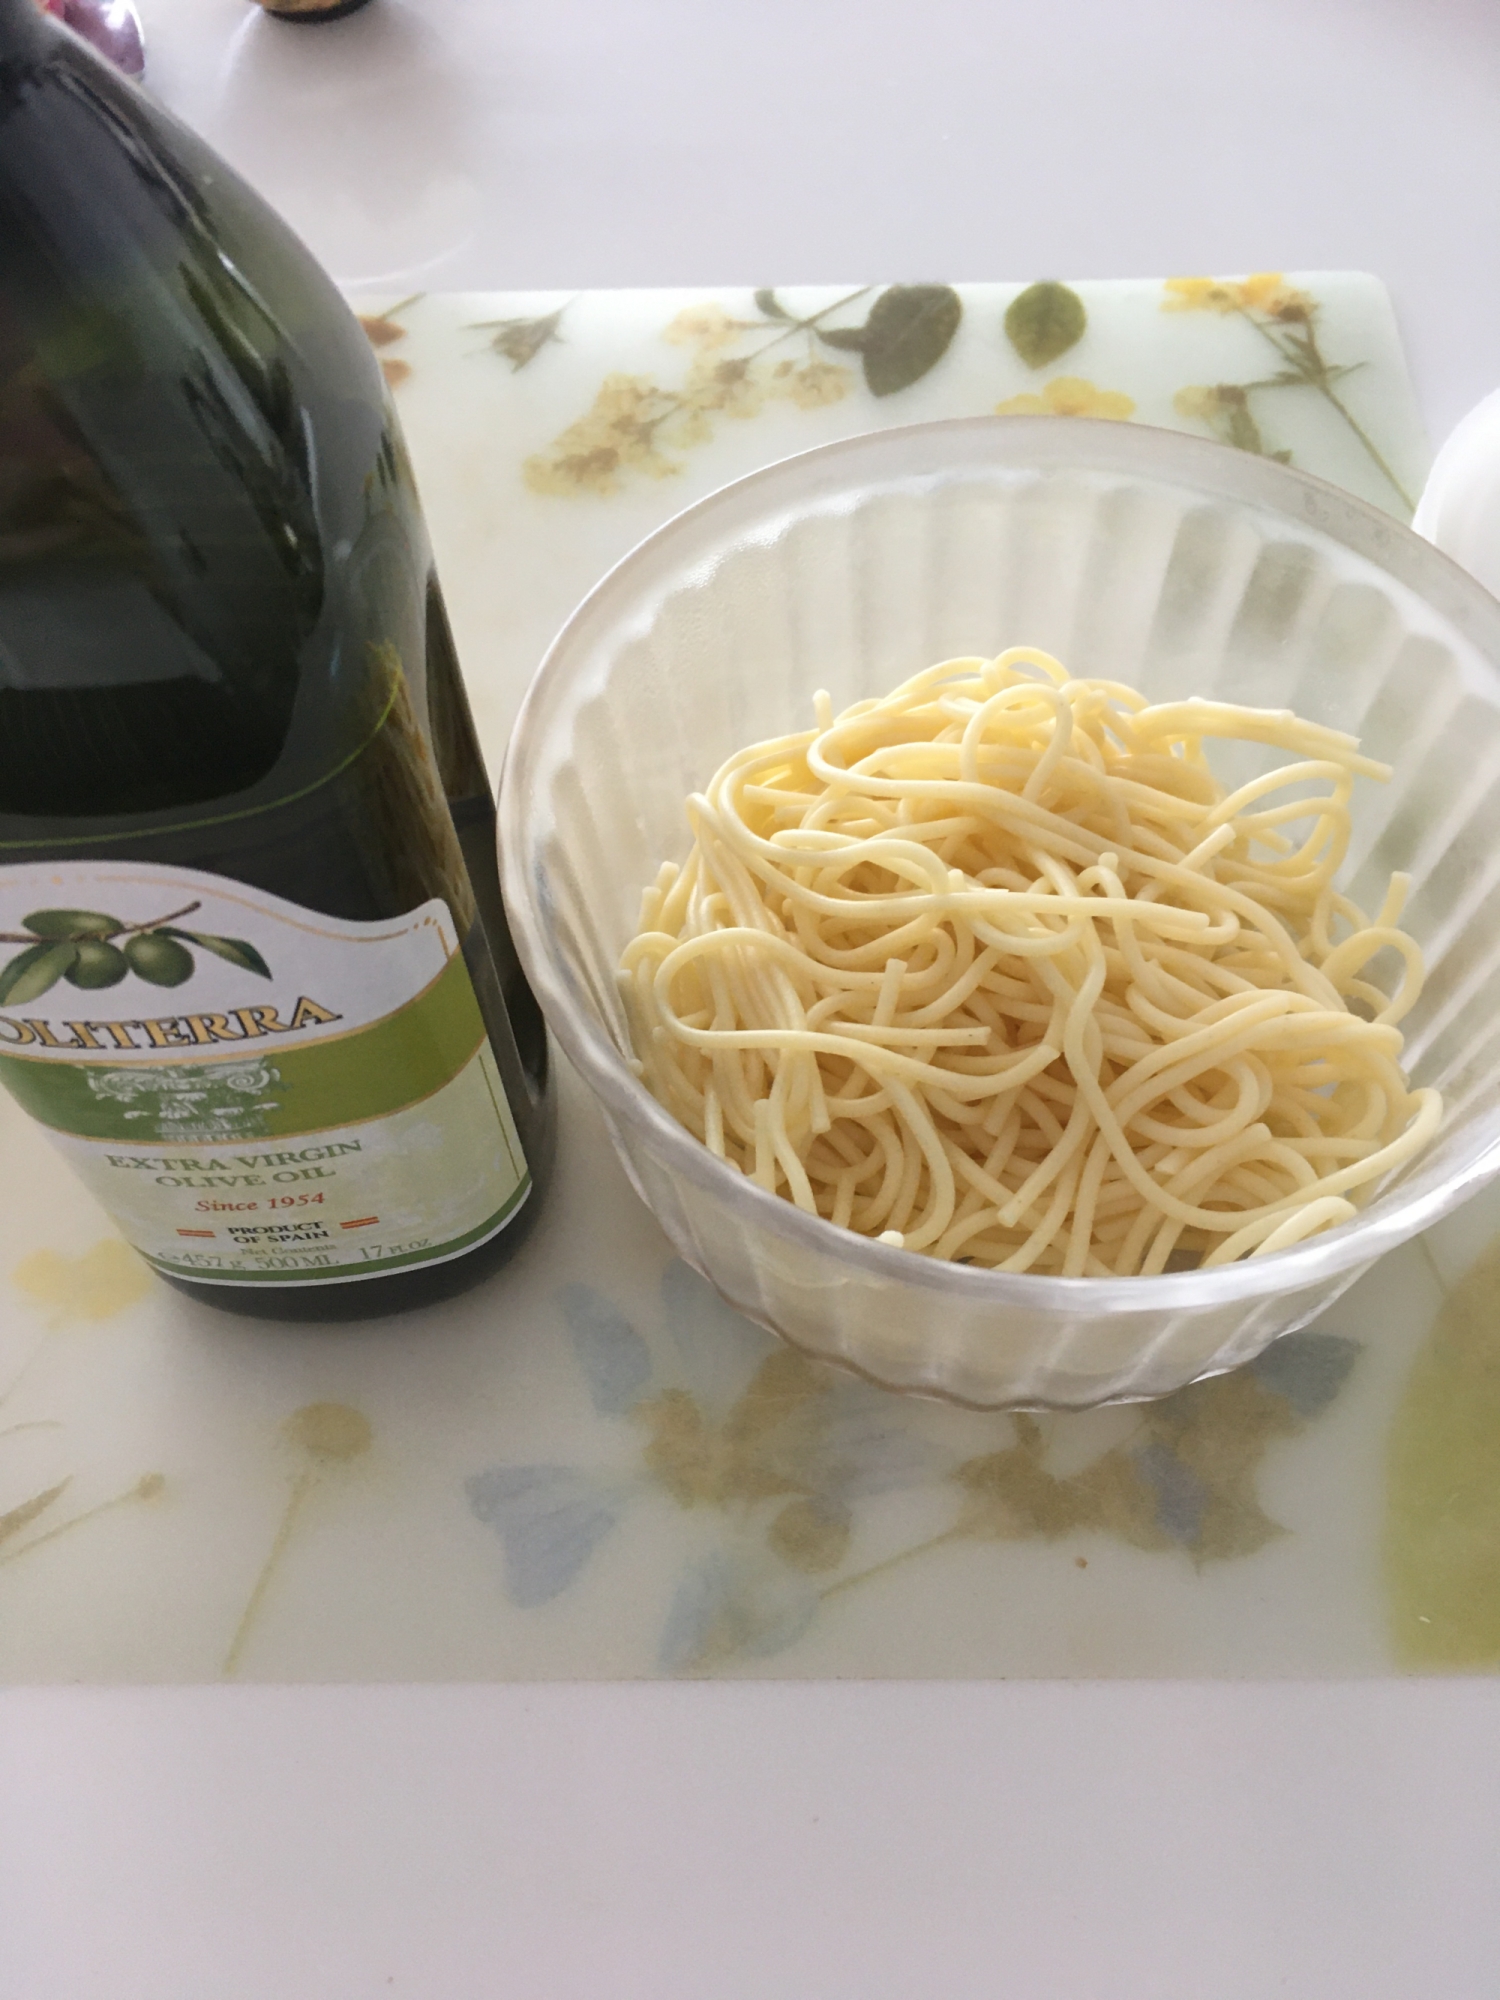 ツルツル☆茹でたスパゲッティがくっつかない方法